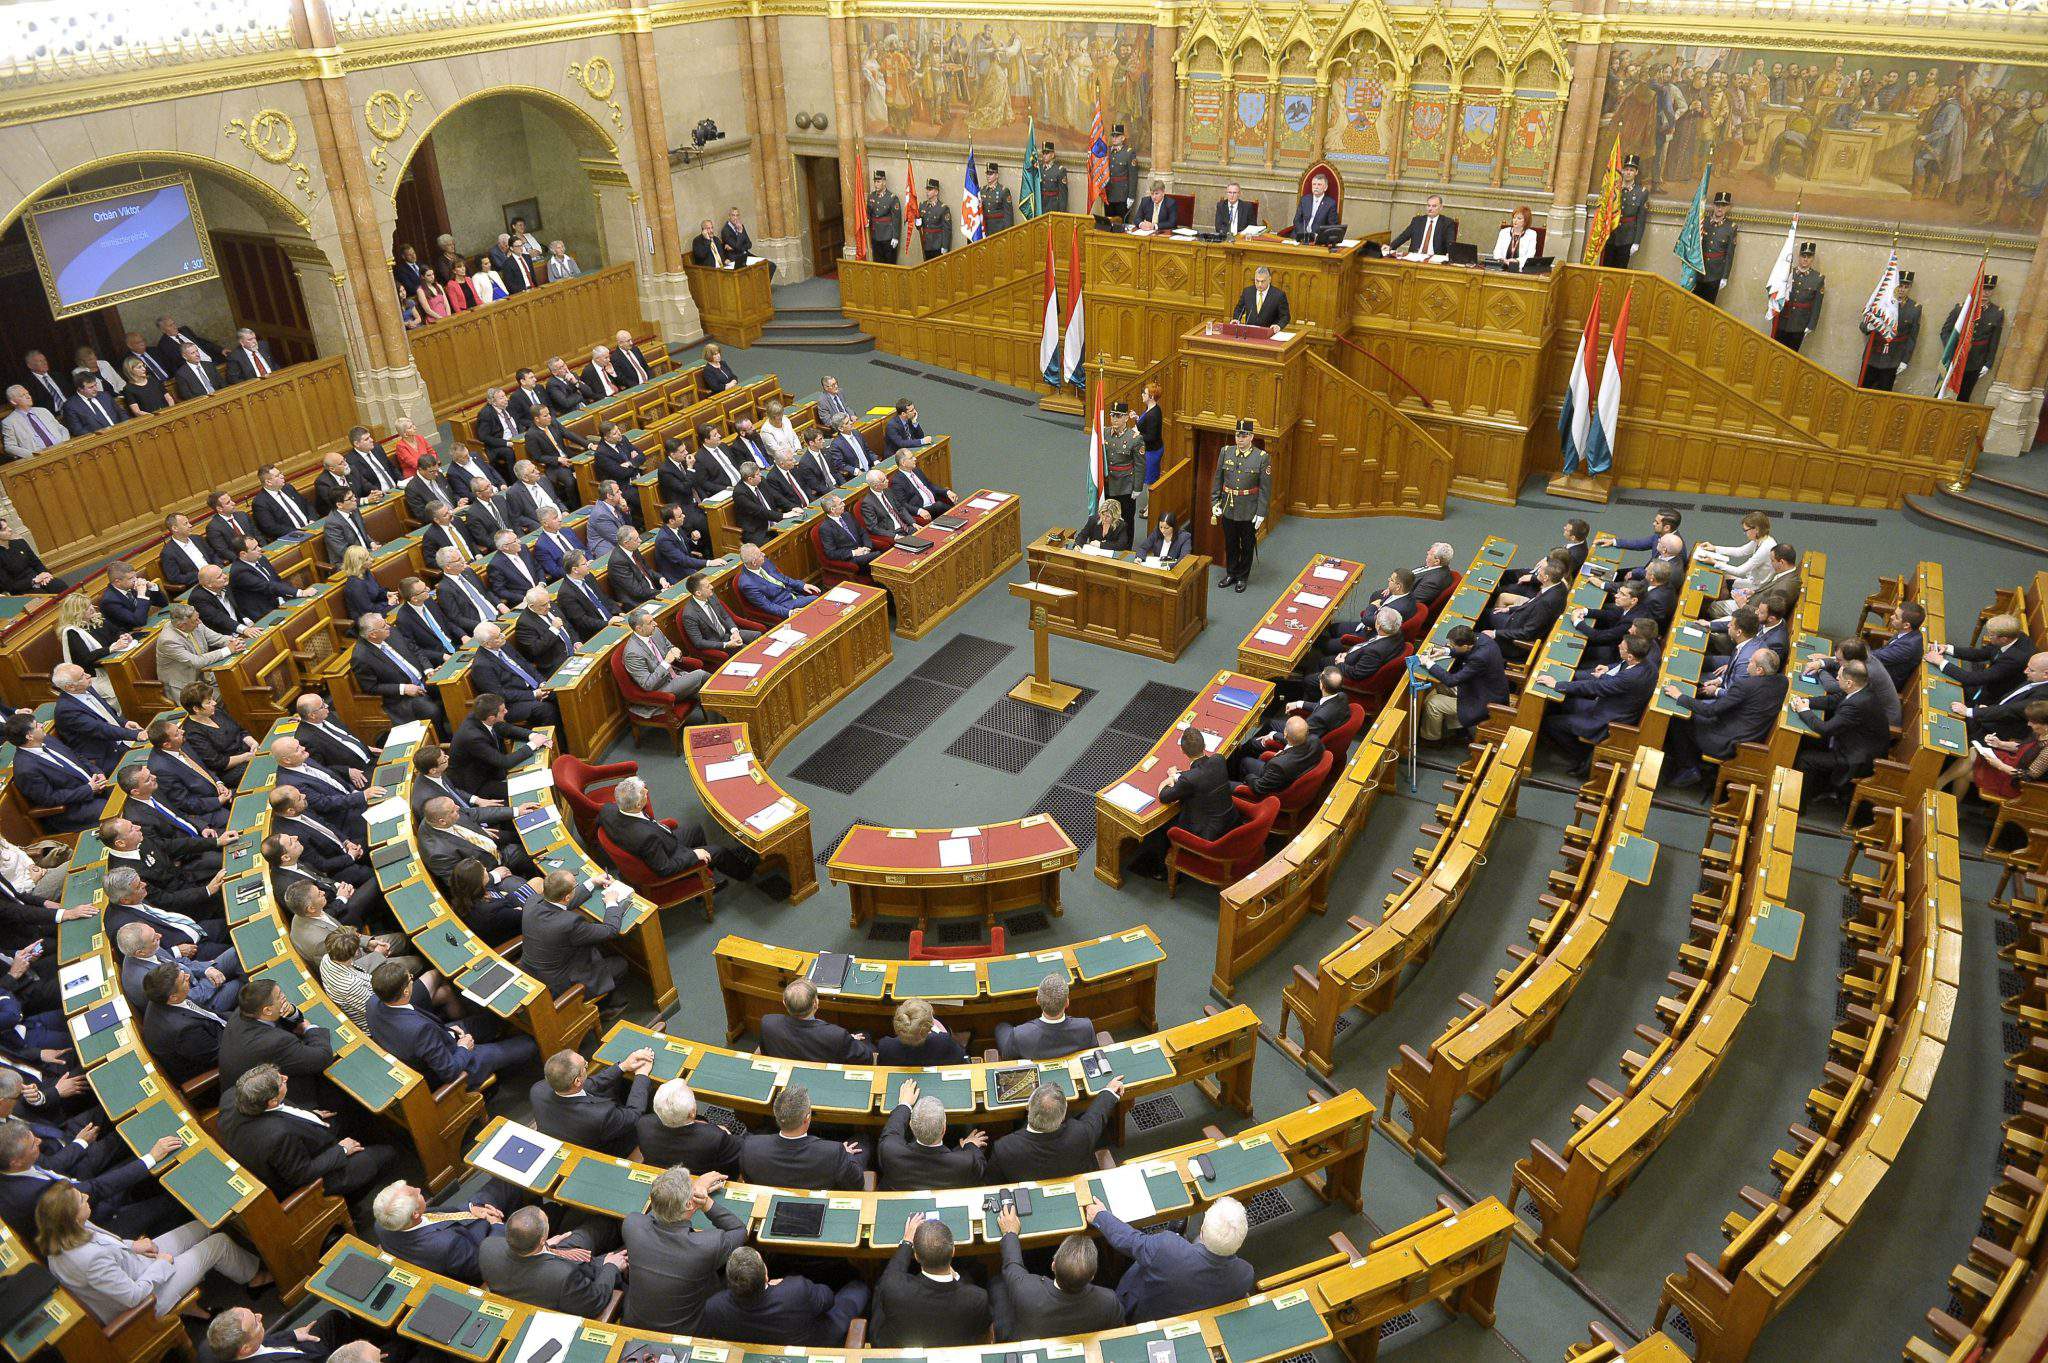 匈牙利新議會連任維克多·歐爾班為總理